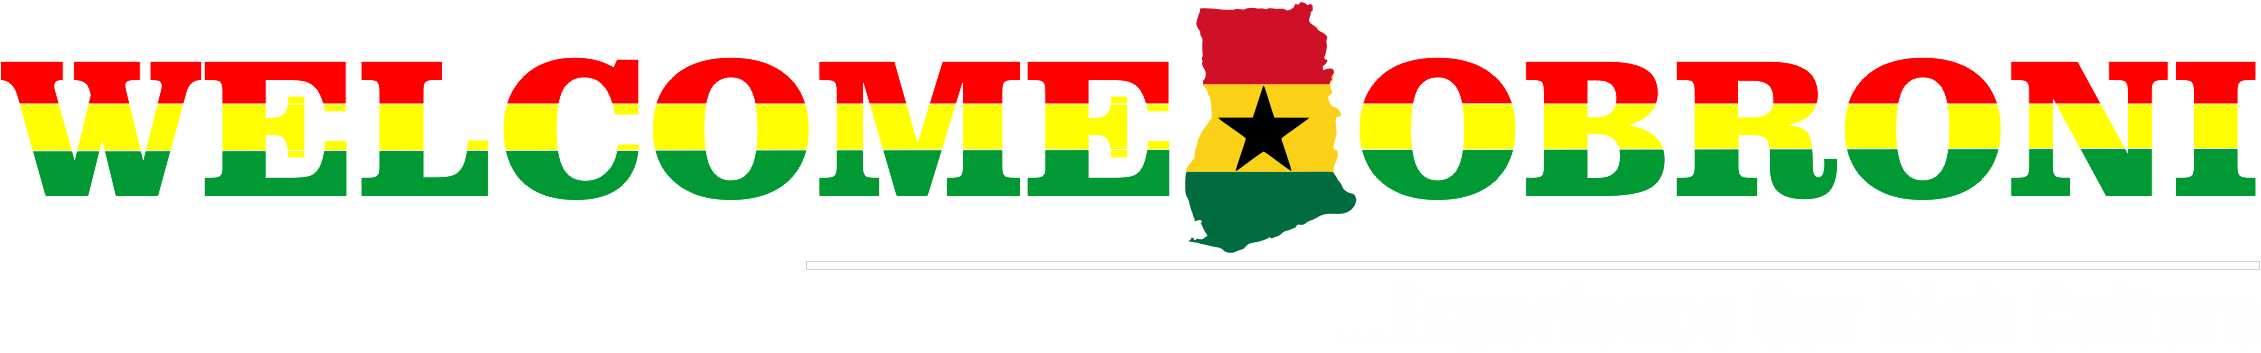 Home - Ghana - Ghana Flag (2261x353)